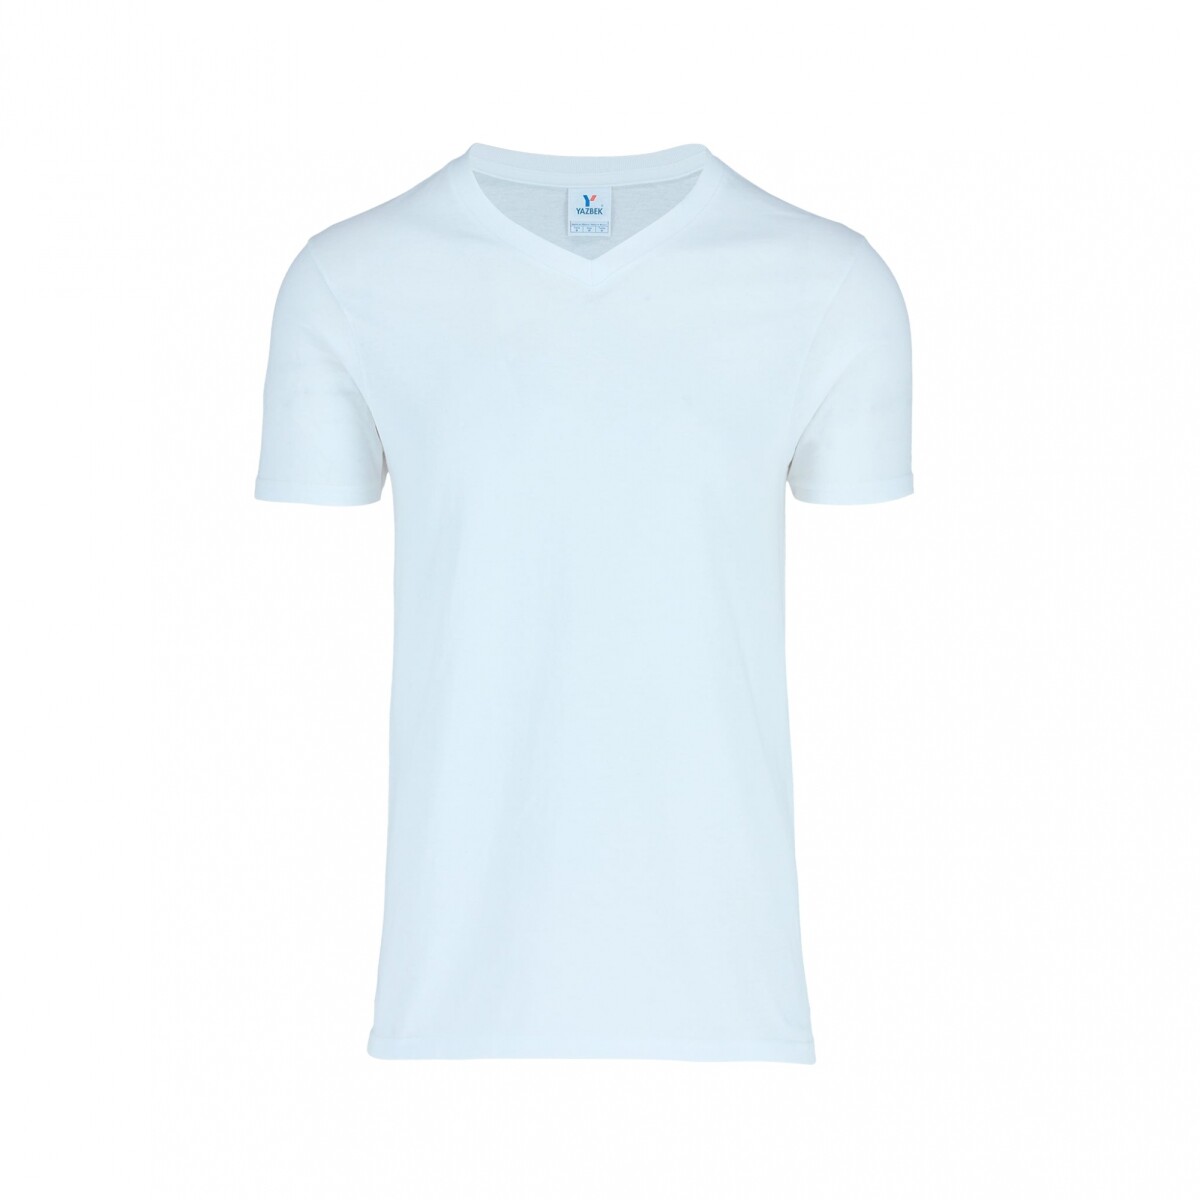 Camiseta escote en v - Blanco 